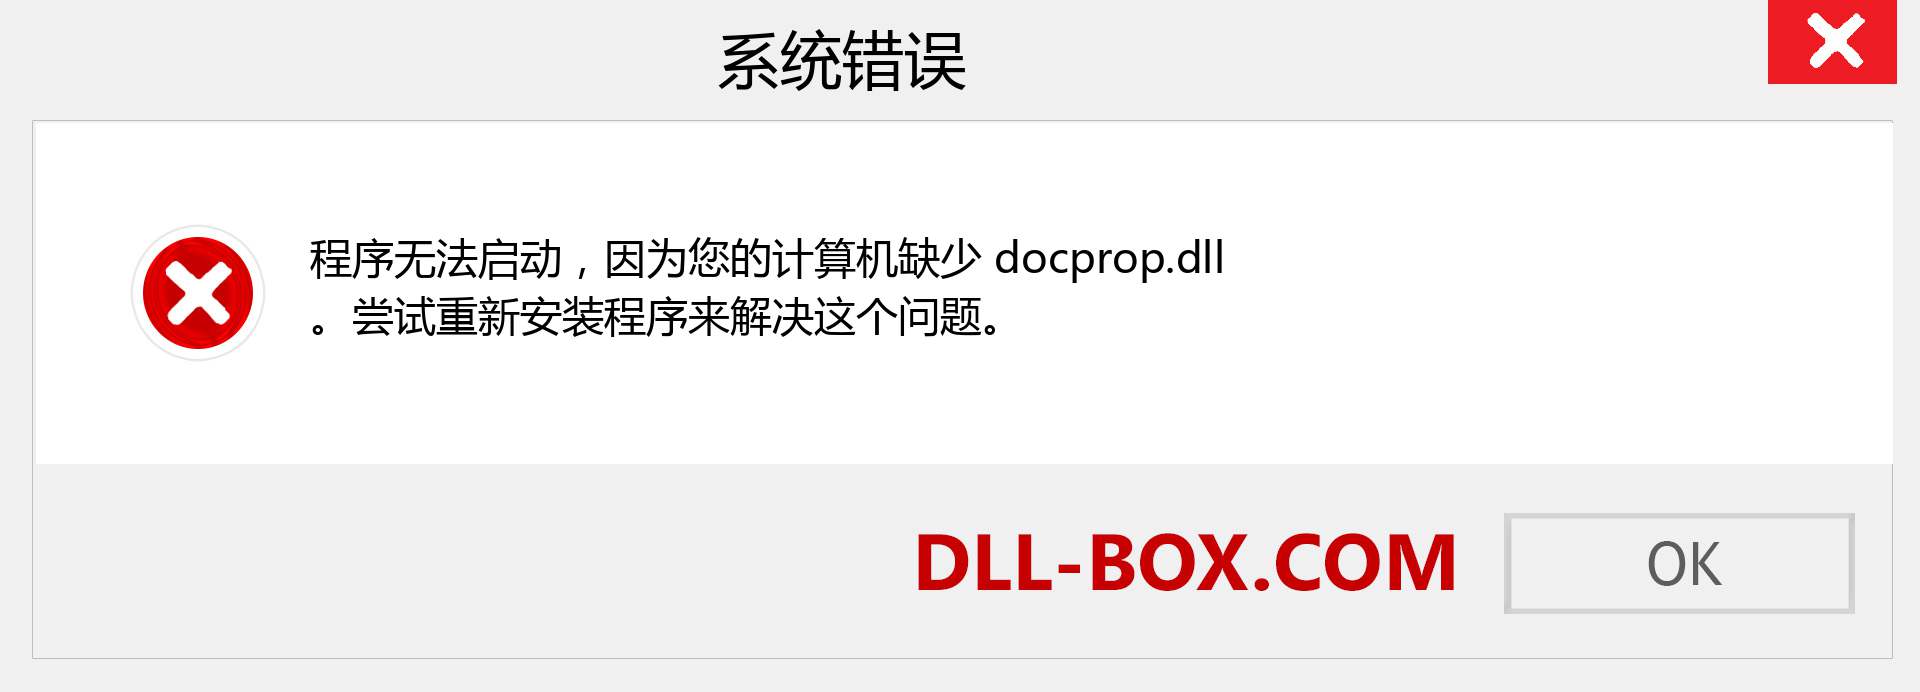 docprop.dll 文件丢失？。 适用于 Windows 7、8、10 的下载 - 修复 Windows、照片、图像上的 docprop dll 丢失错误